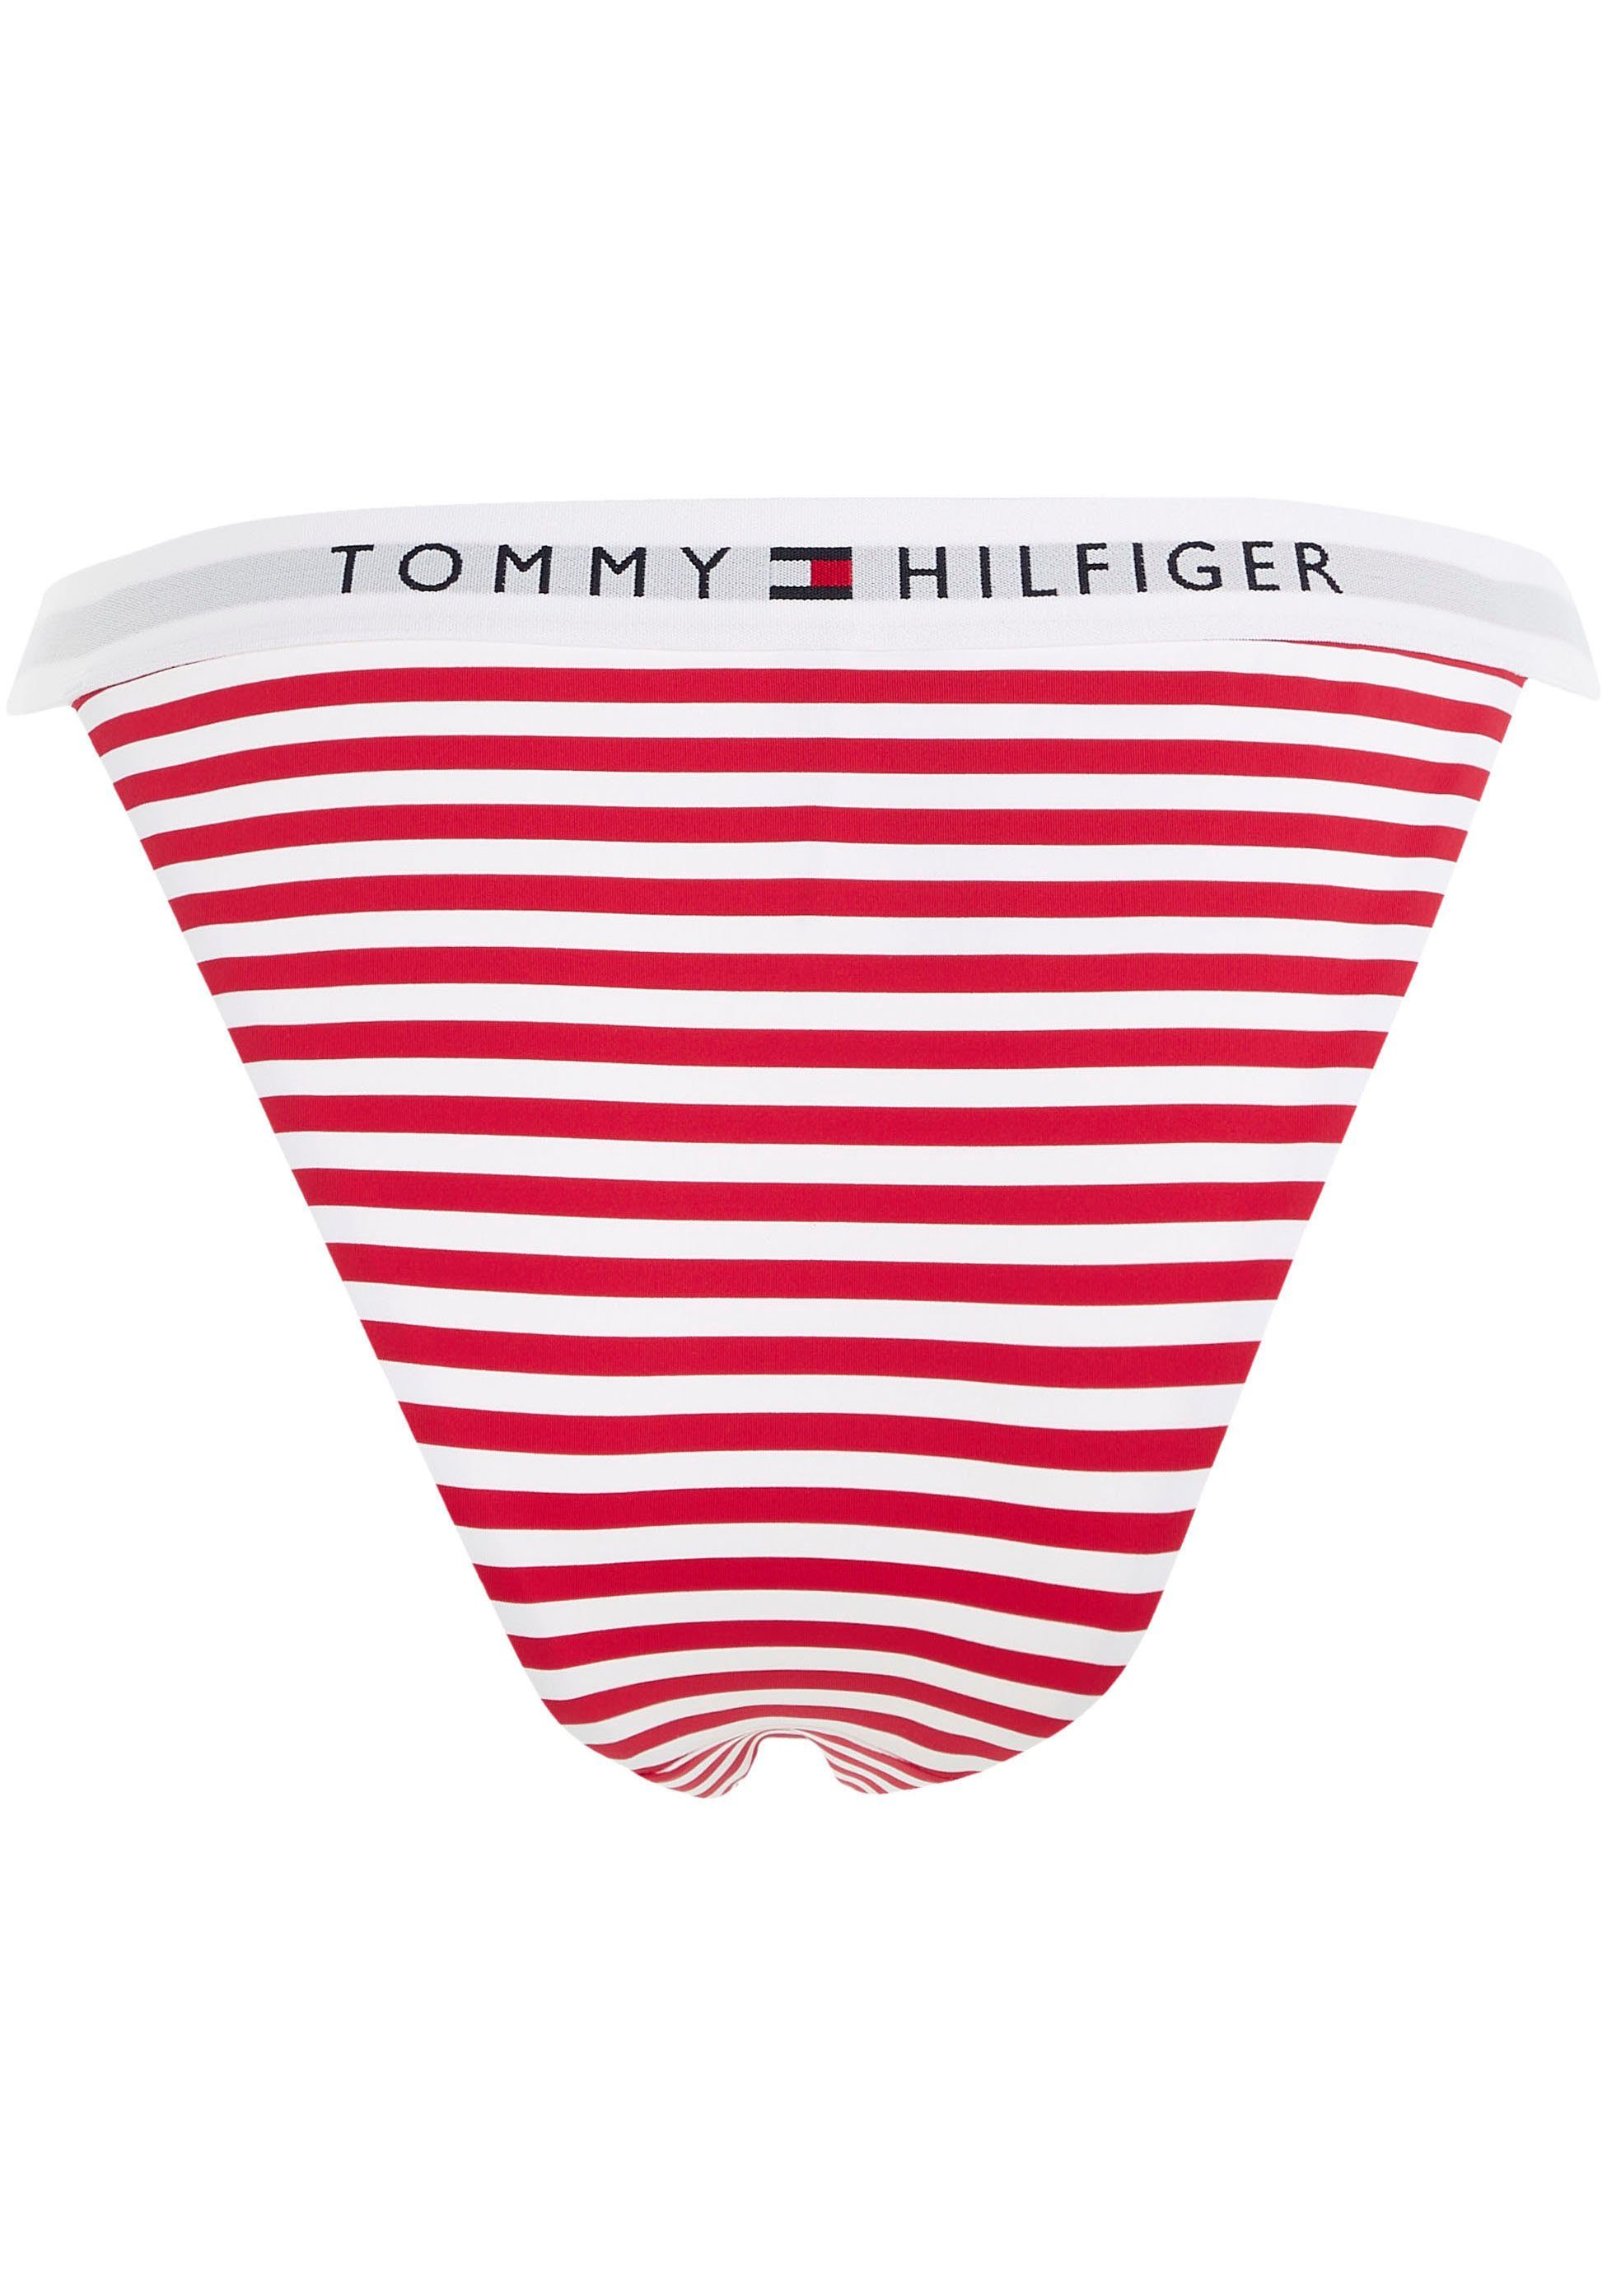 Bikini-Hose Hilfiger Tommy Swimwear TH PRINT mit WB Tommy Hilfiger-Branding BIKINI CHEEKY